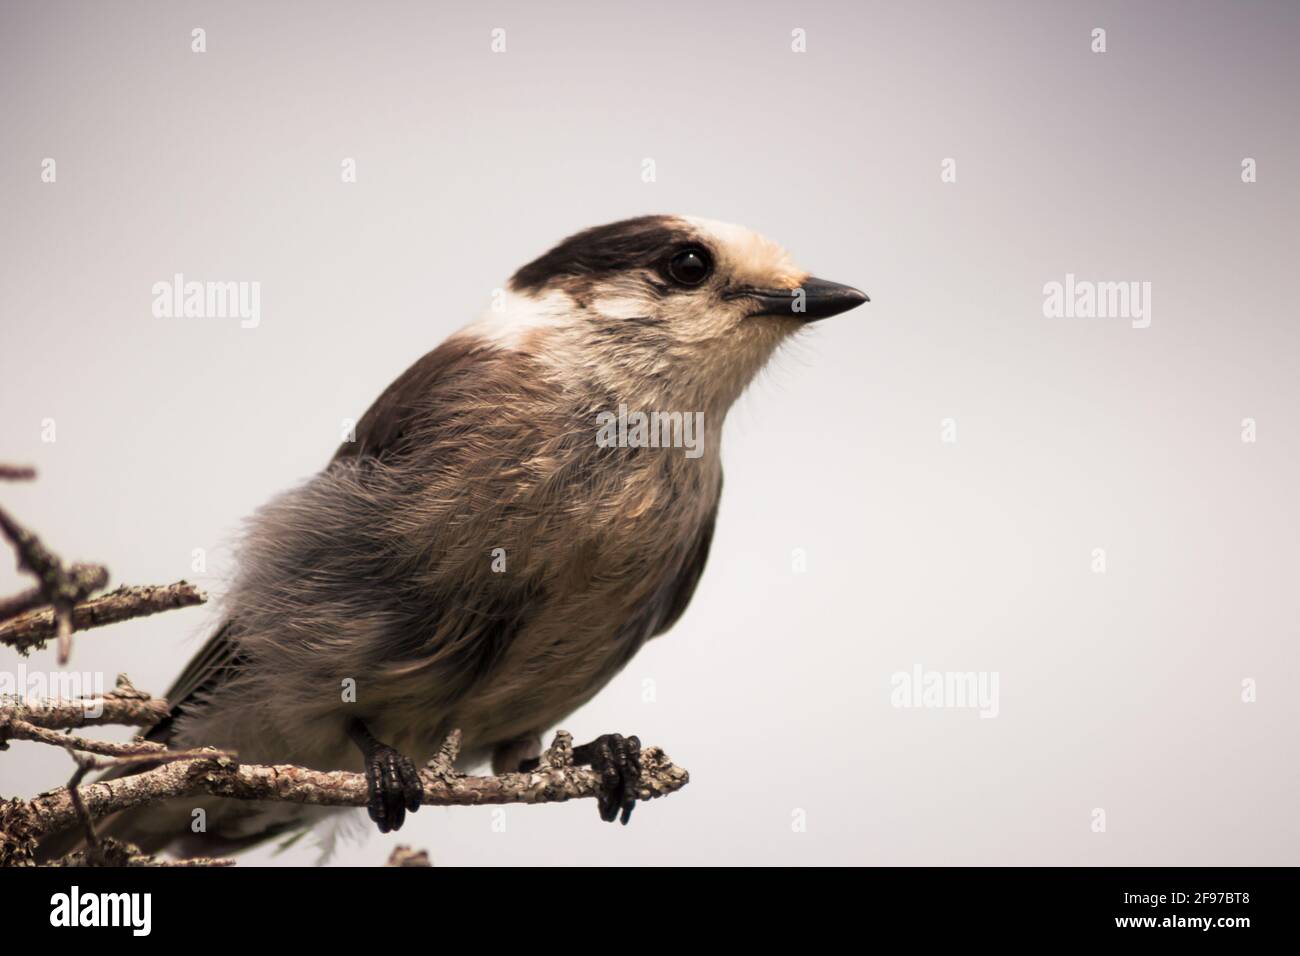 Un pájaro de Canada Jay encaramado en la rama de un árbol. AKA: canadá jay, gris jay, whisky jack, gris jay. Foto de stock